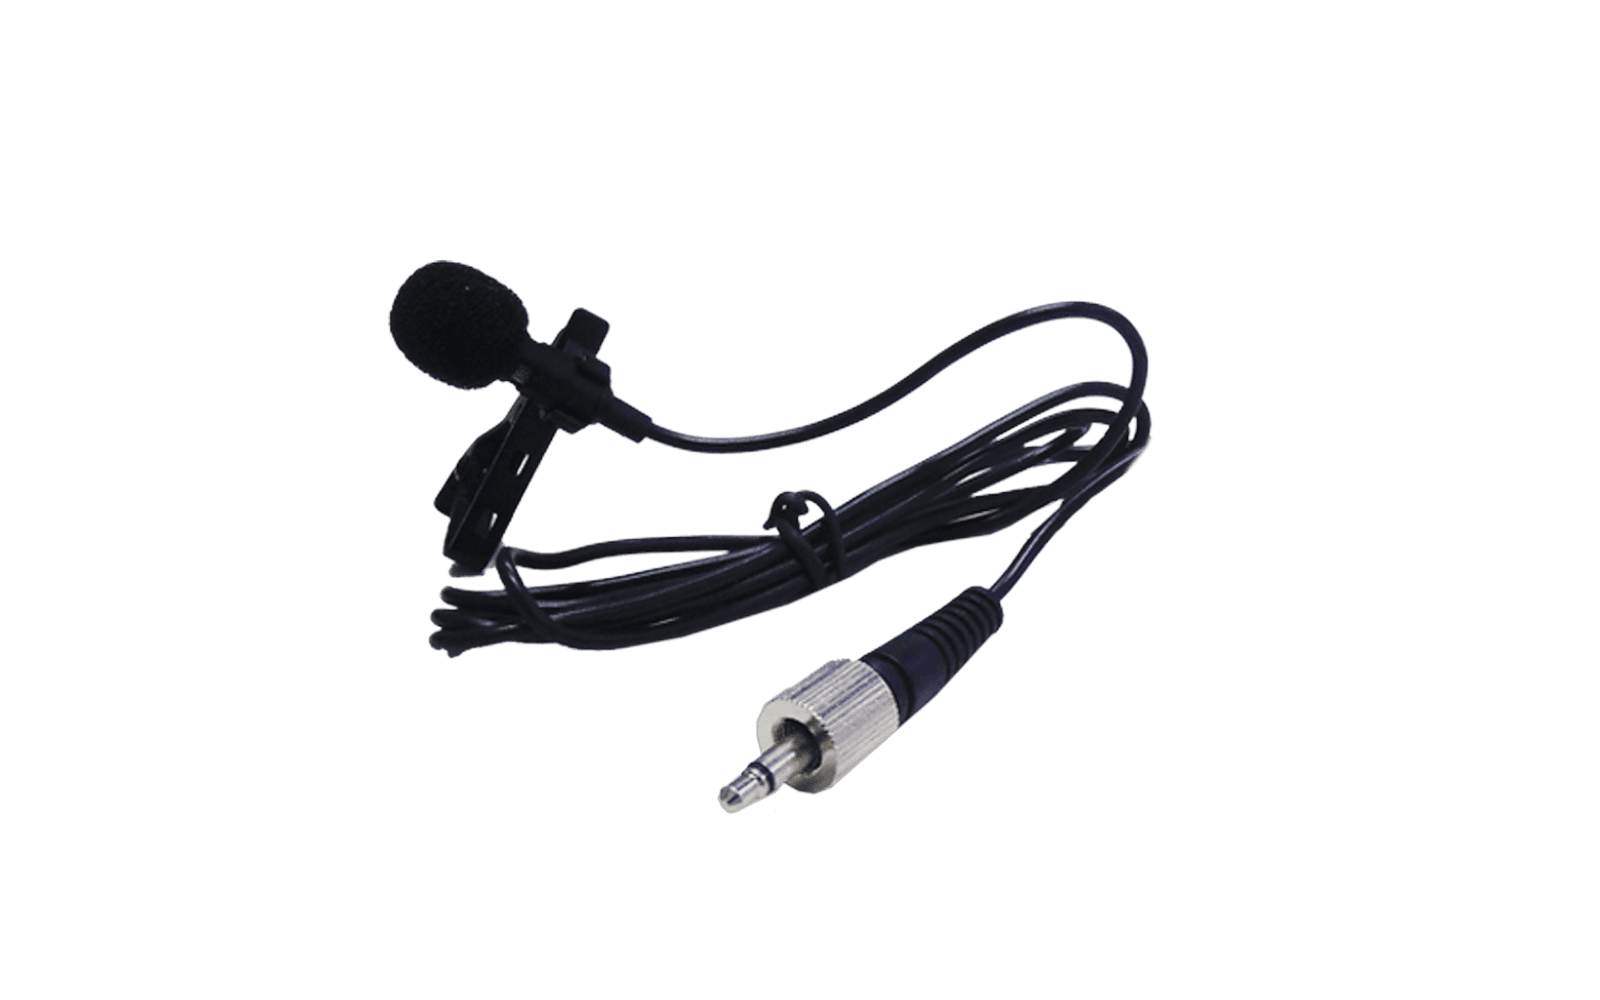 Microfone Lyco Uh228.1h Uhf 1441 Frequência digital s/fio Cabeça 2 Antenas